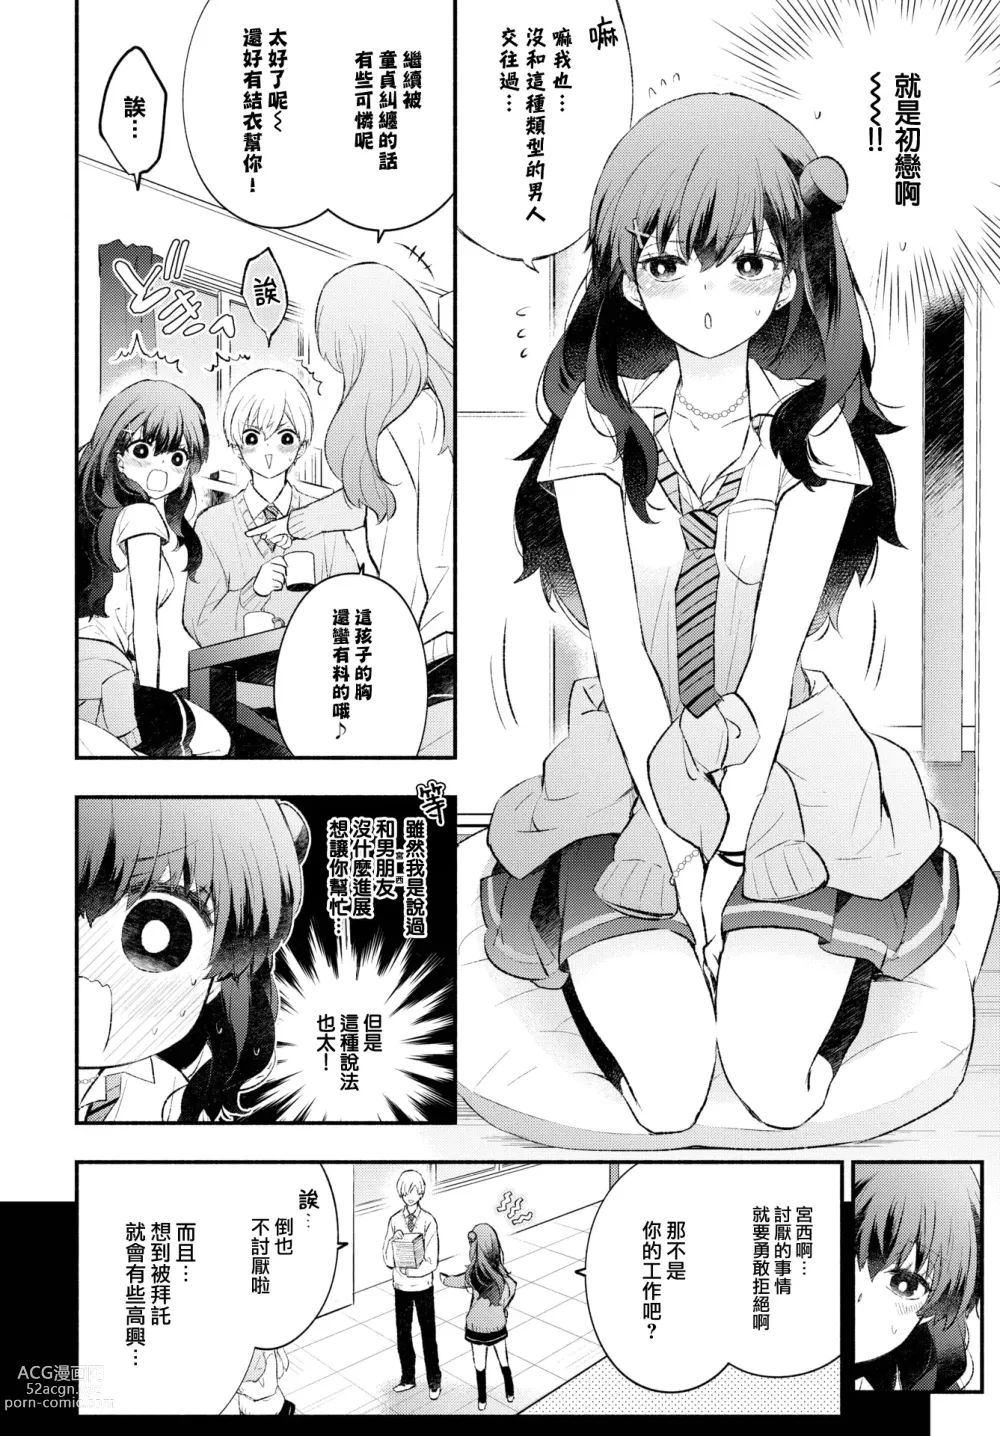 Page 3 of manga Usotsuki Kanojo